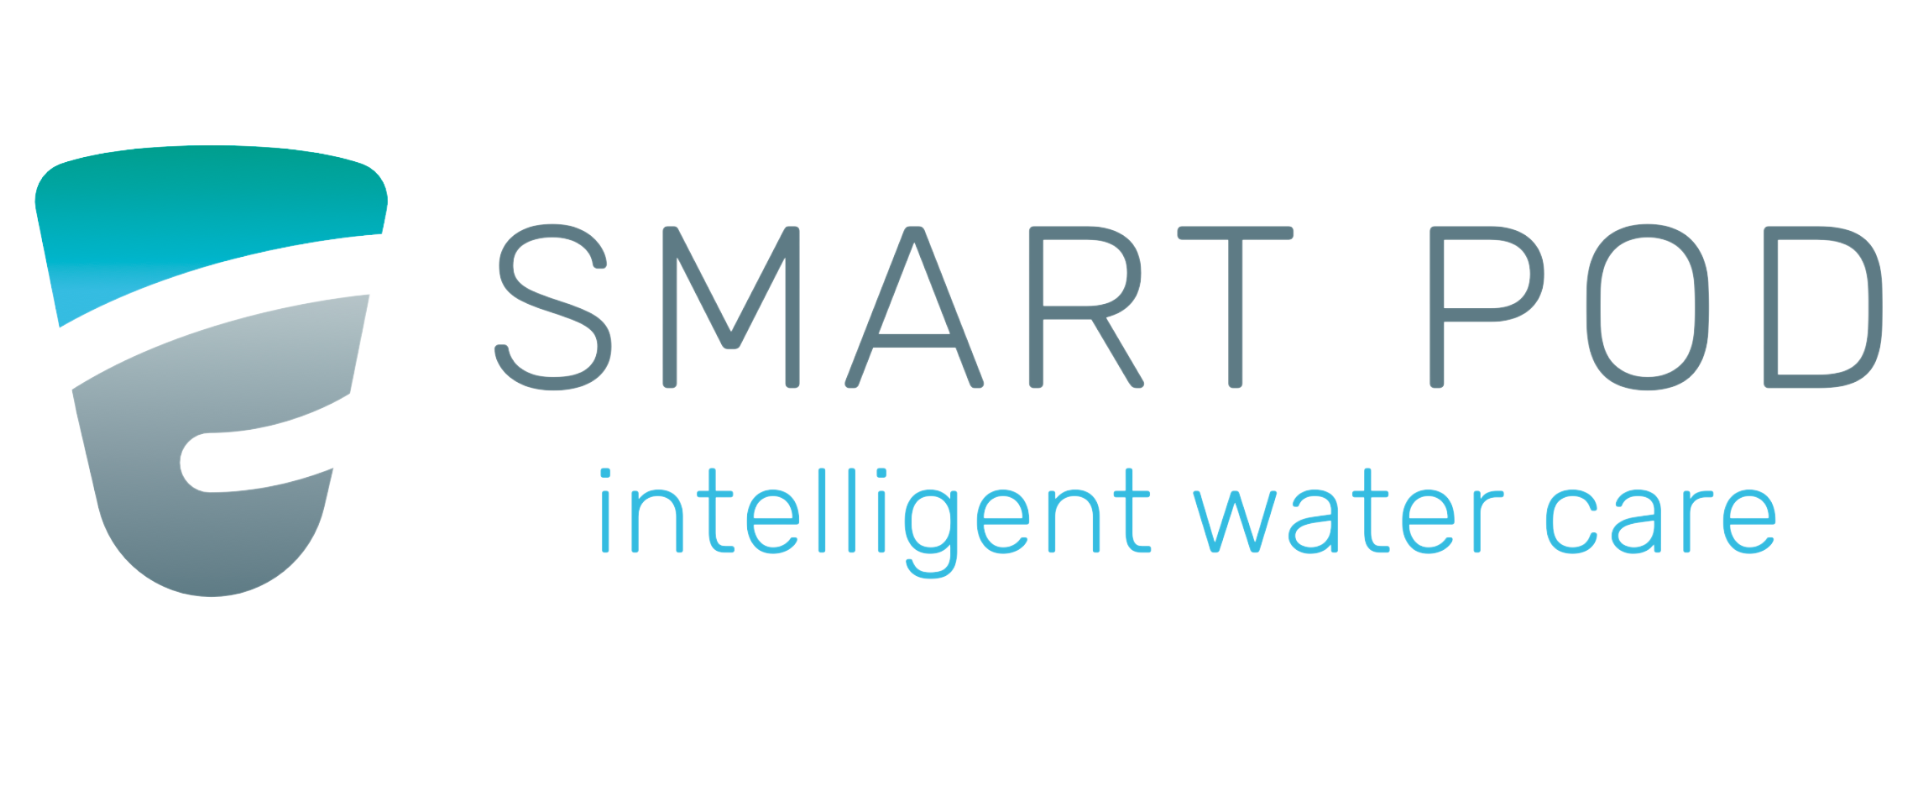 SmartPod logo